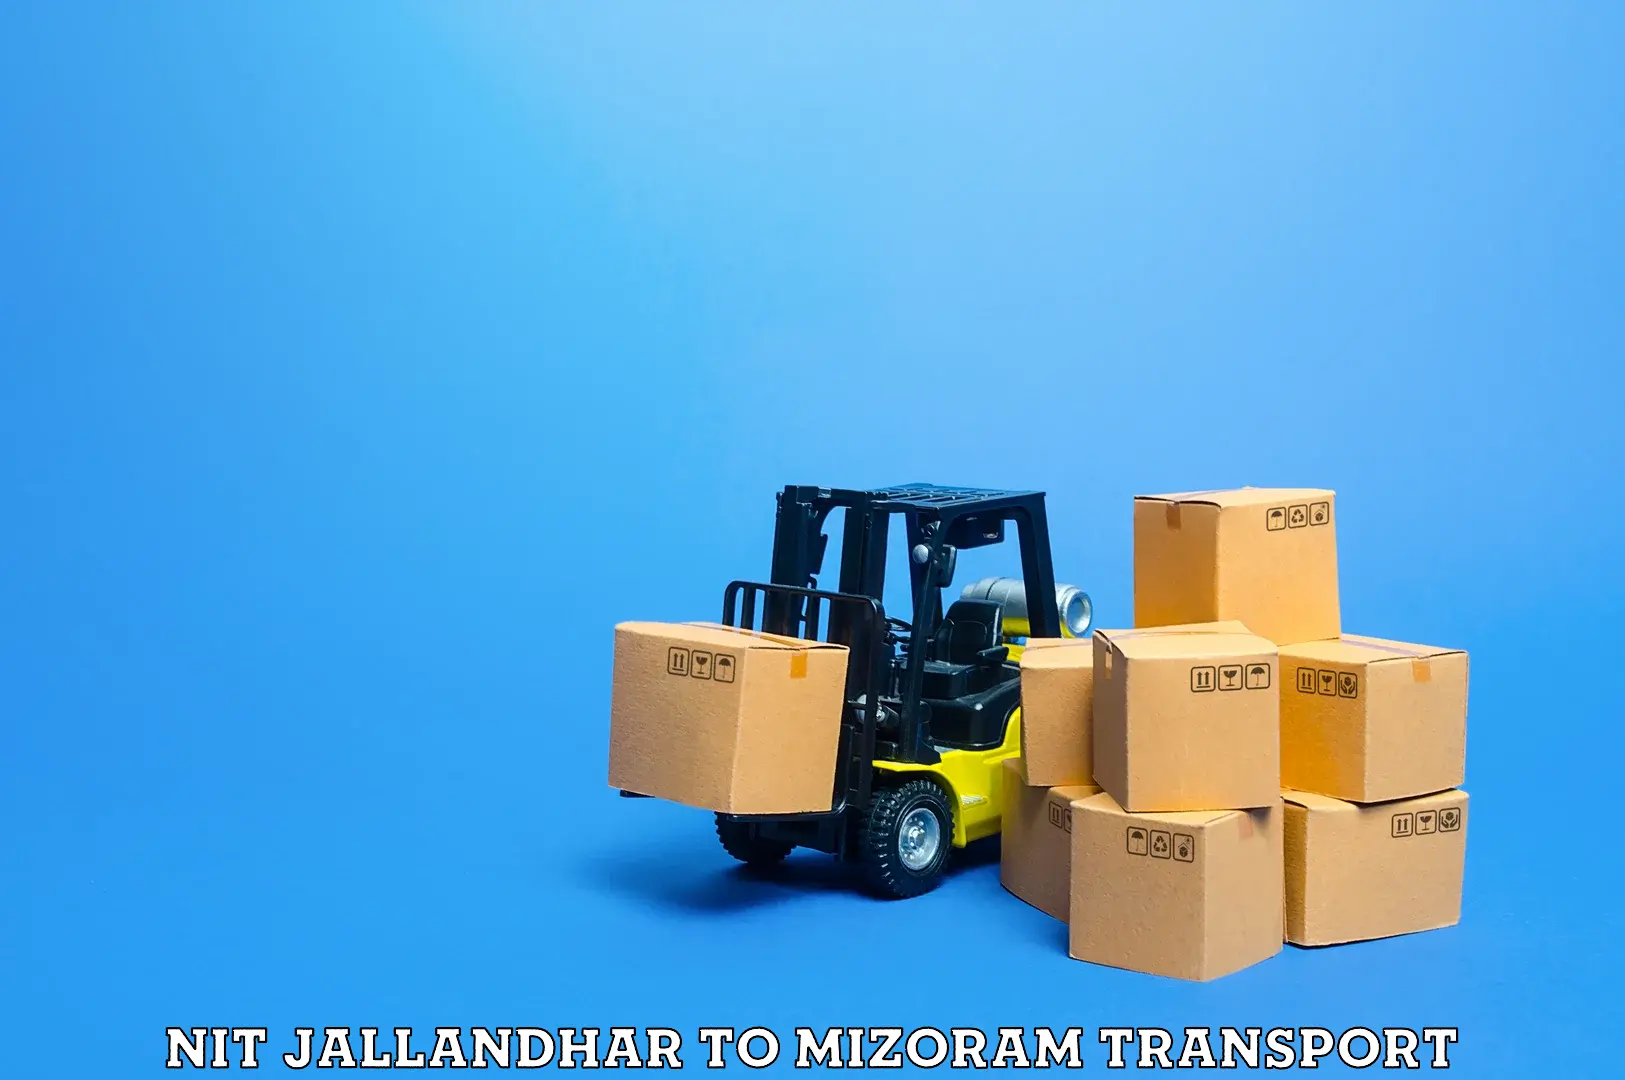 Furniture transport service NIT Jallandhar to Saitual